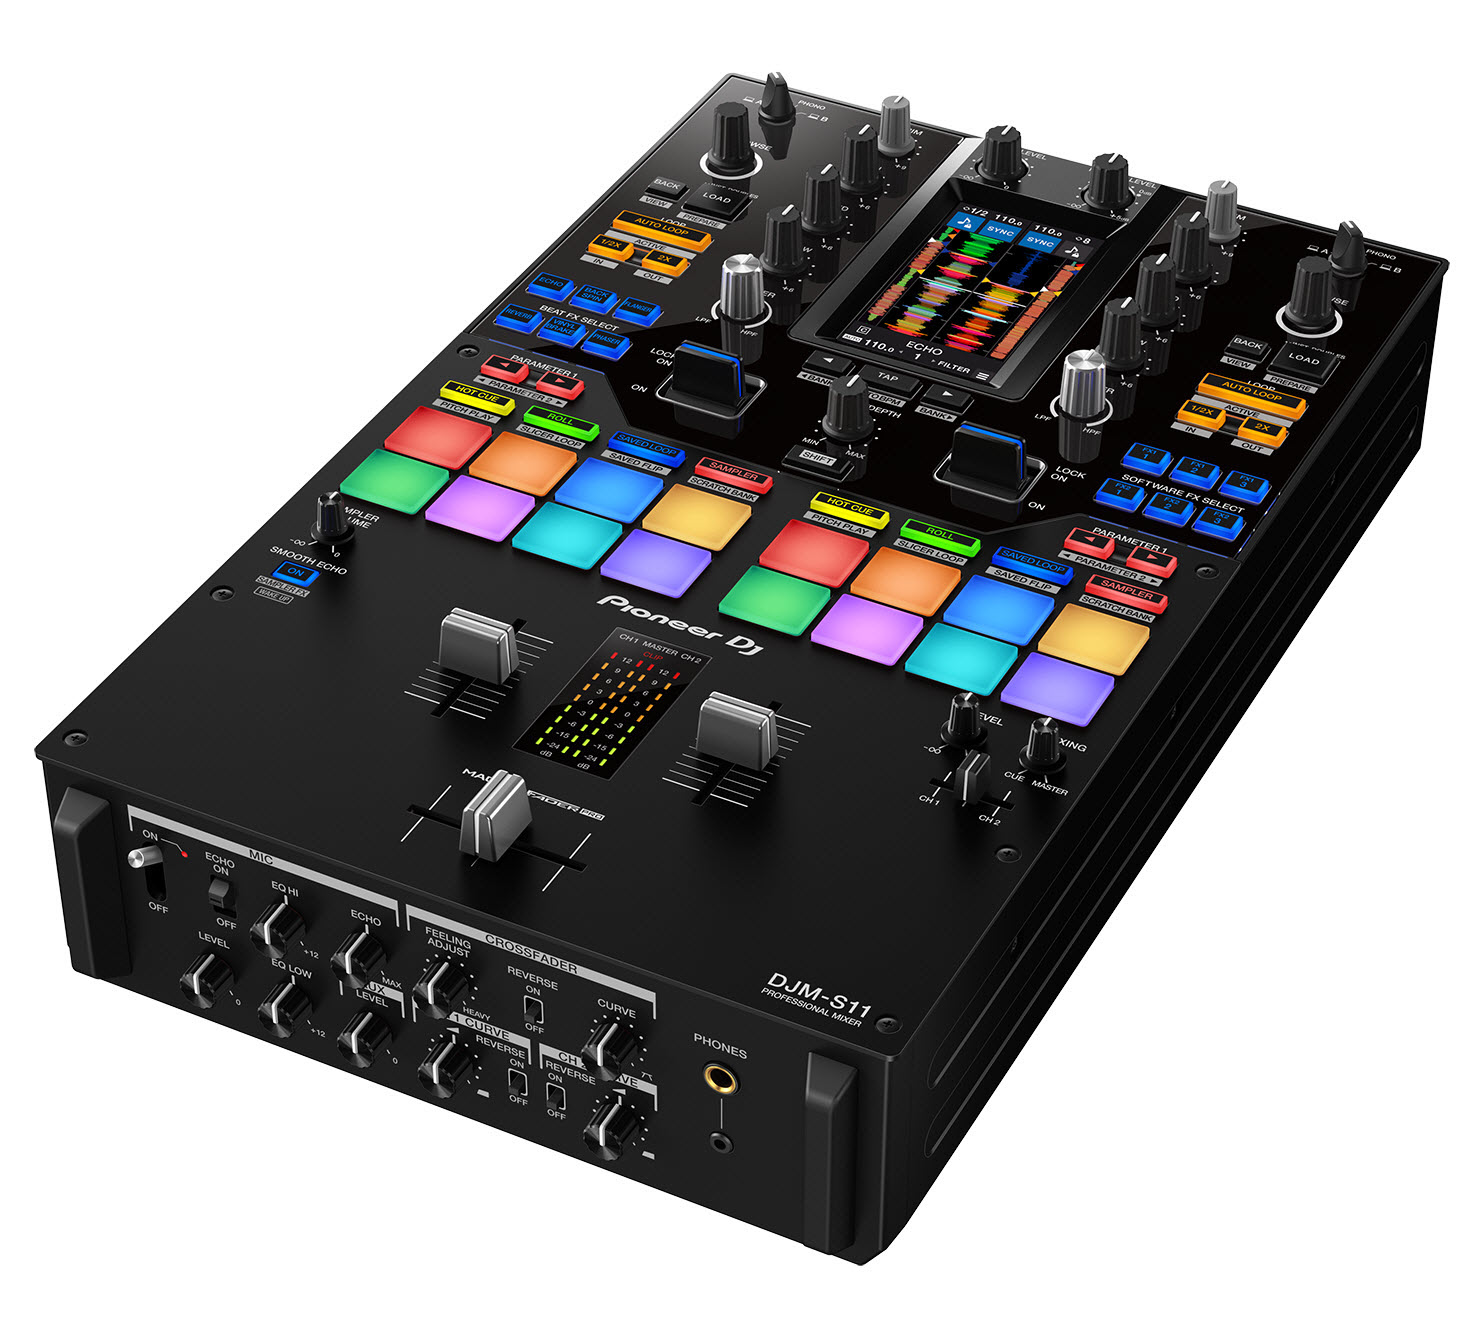 先锋（Pioneer）发布2ch专业搓碟风格DJ混音器DJM-S11